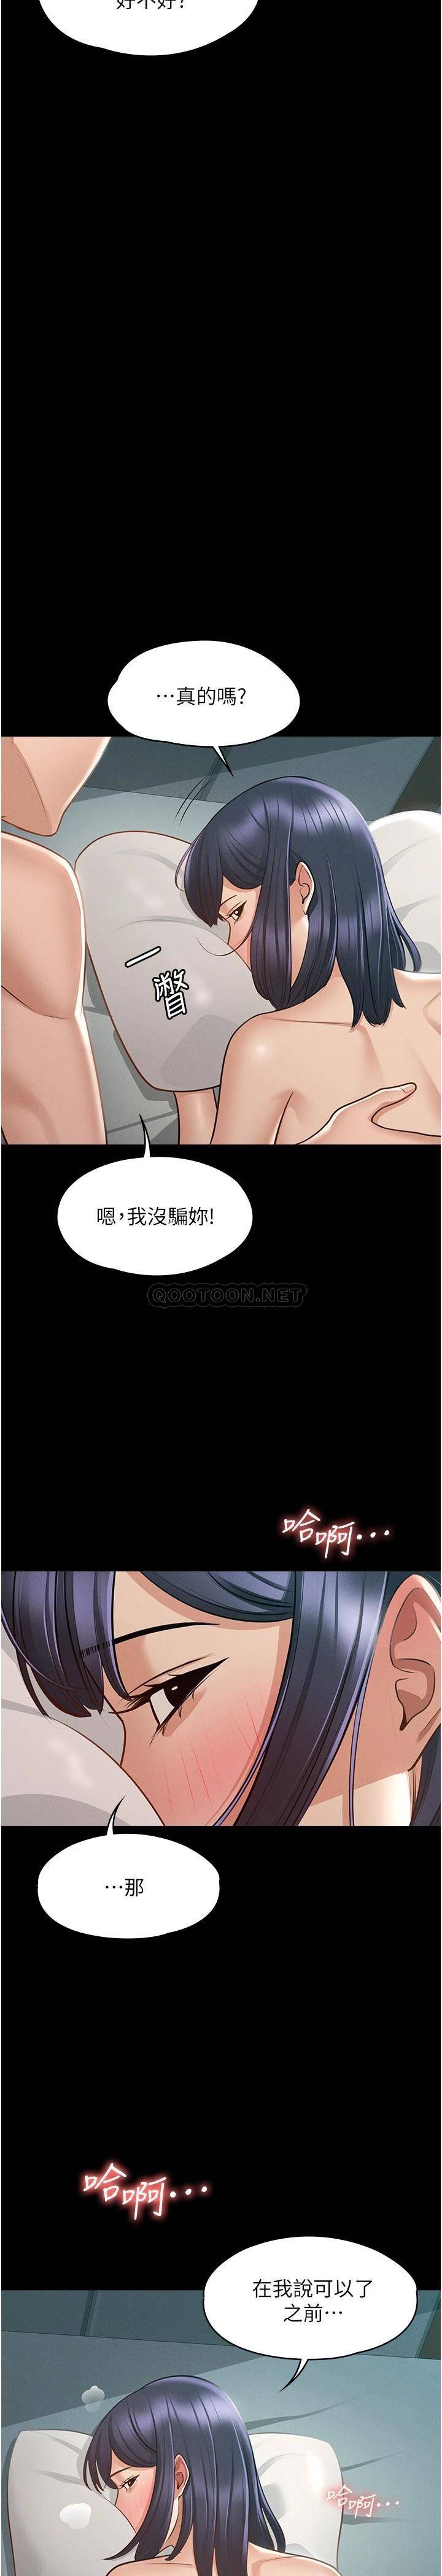 韩国污漫画 超級公務員 第8话 眼前的「性」福最重要! 24